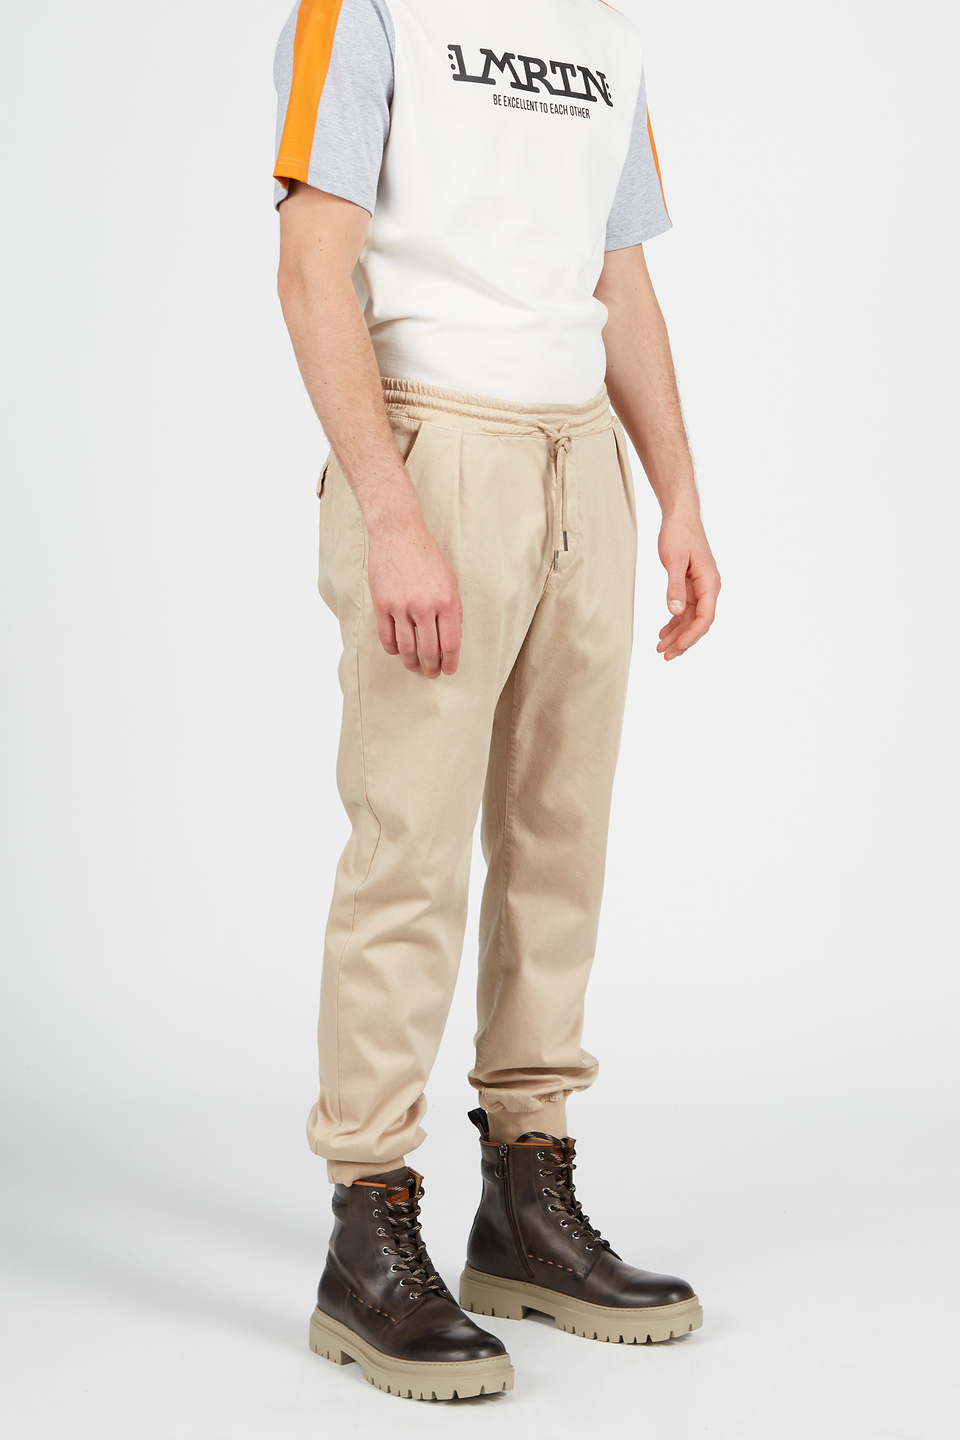 Cotton trousers | La Martina - Official Online Shop